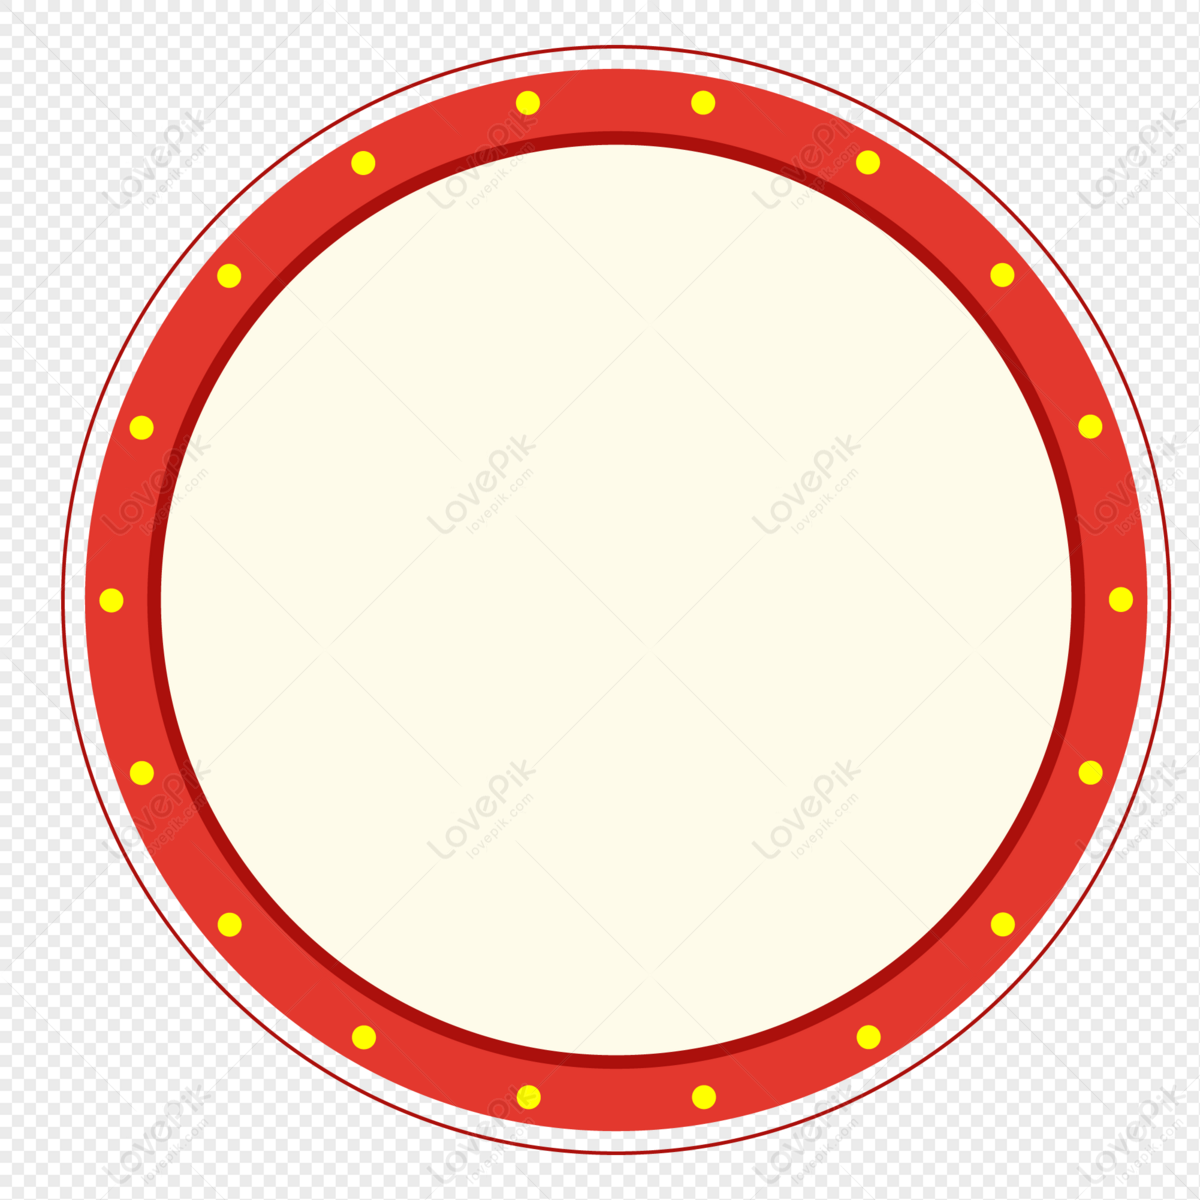 Đường viền tròn màu đỏ: Đường viền tròn màu đỏ thường được sử dụng để đánh dấu vùng an toàn và đấu giá trên đường. Hãy xem hình ảnh để tìm hiểu thêm về ứng dụng và tầm quan trọng của đường viền tròn màu đỏ trong đời sống hàng ngày.